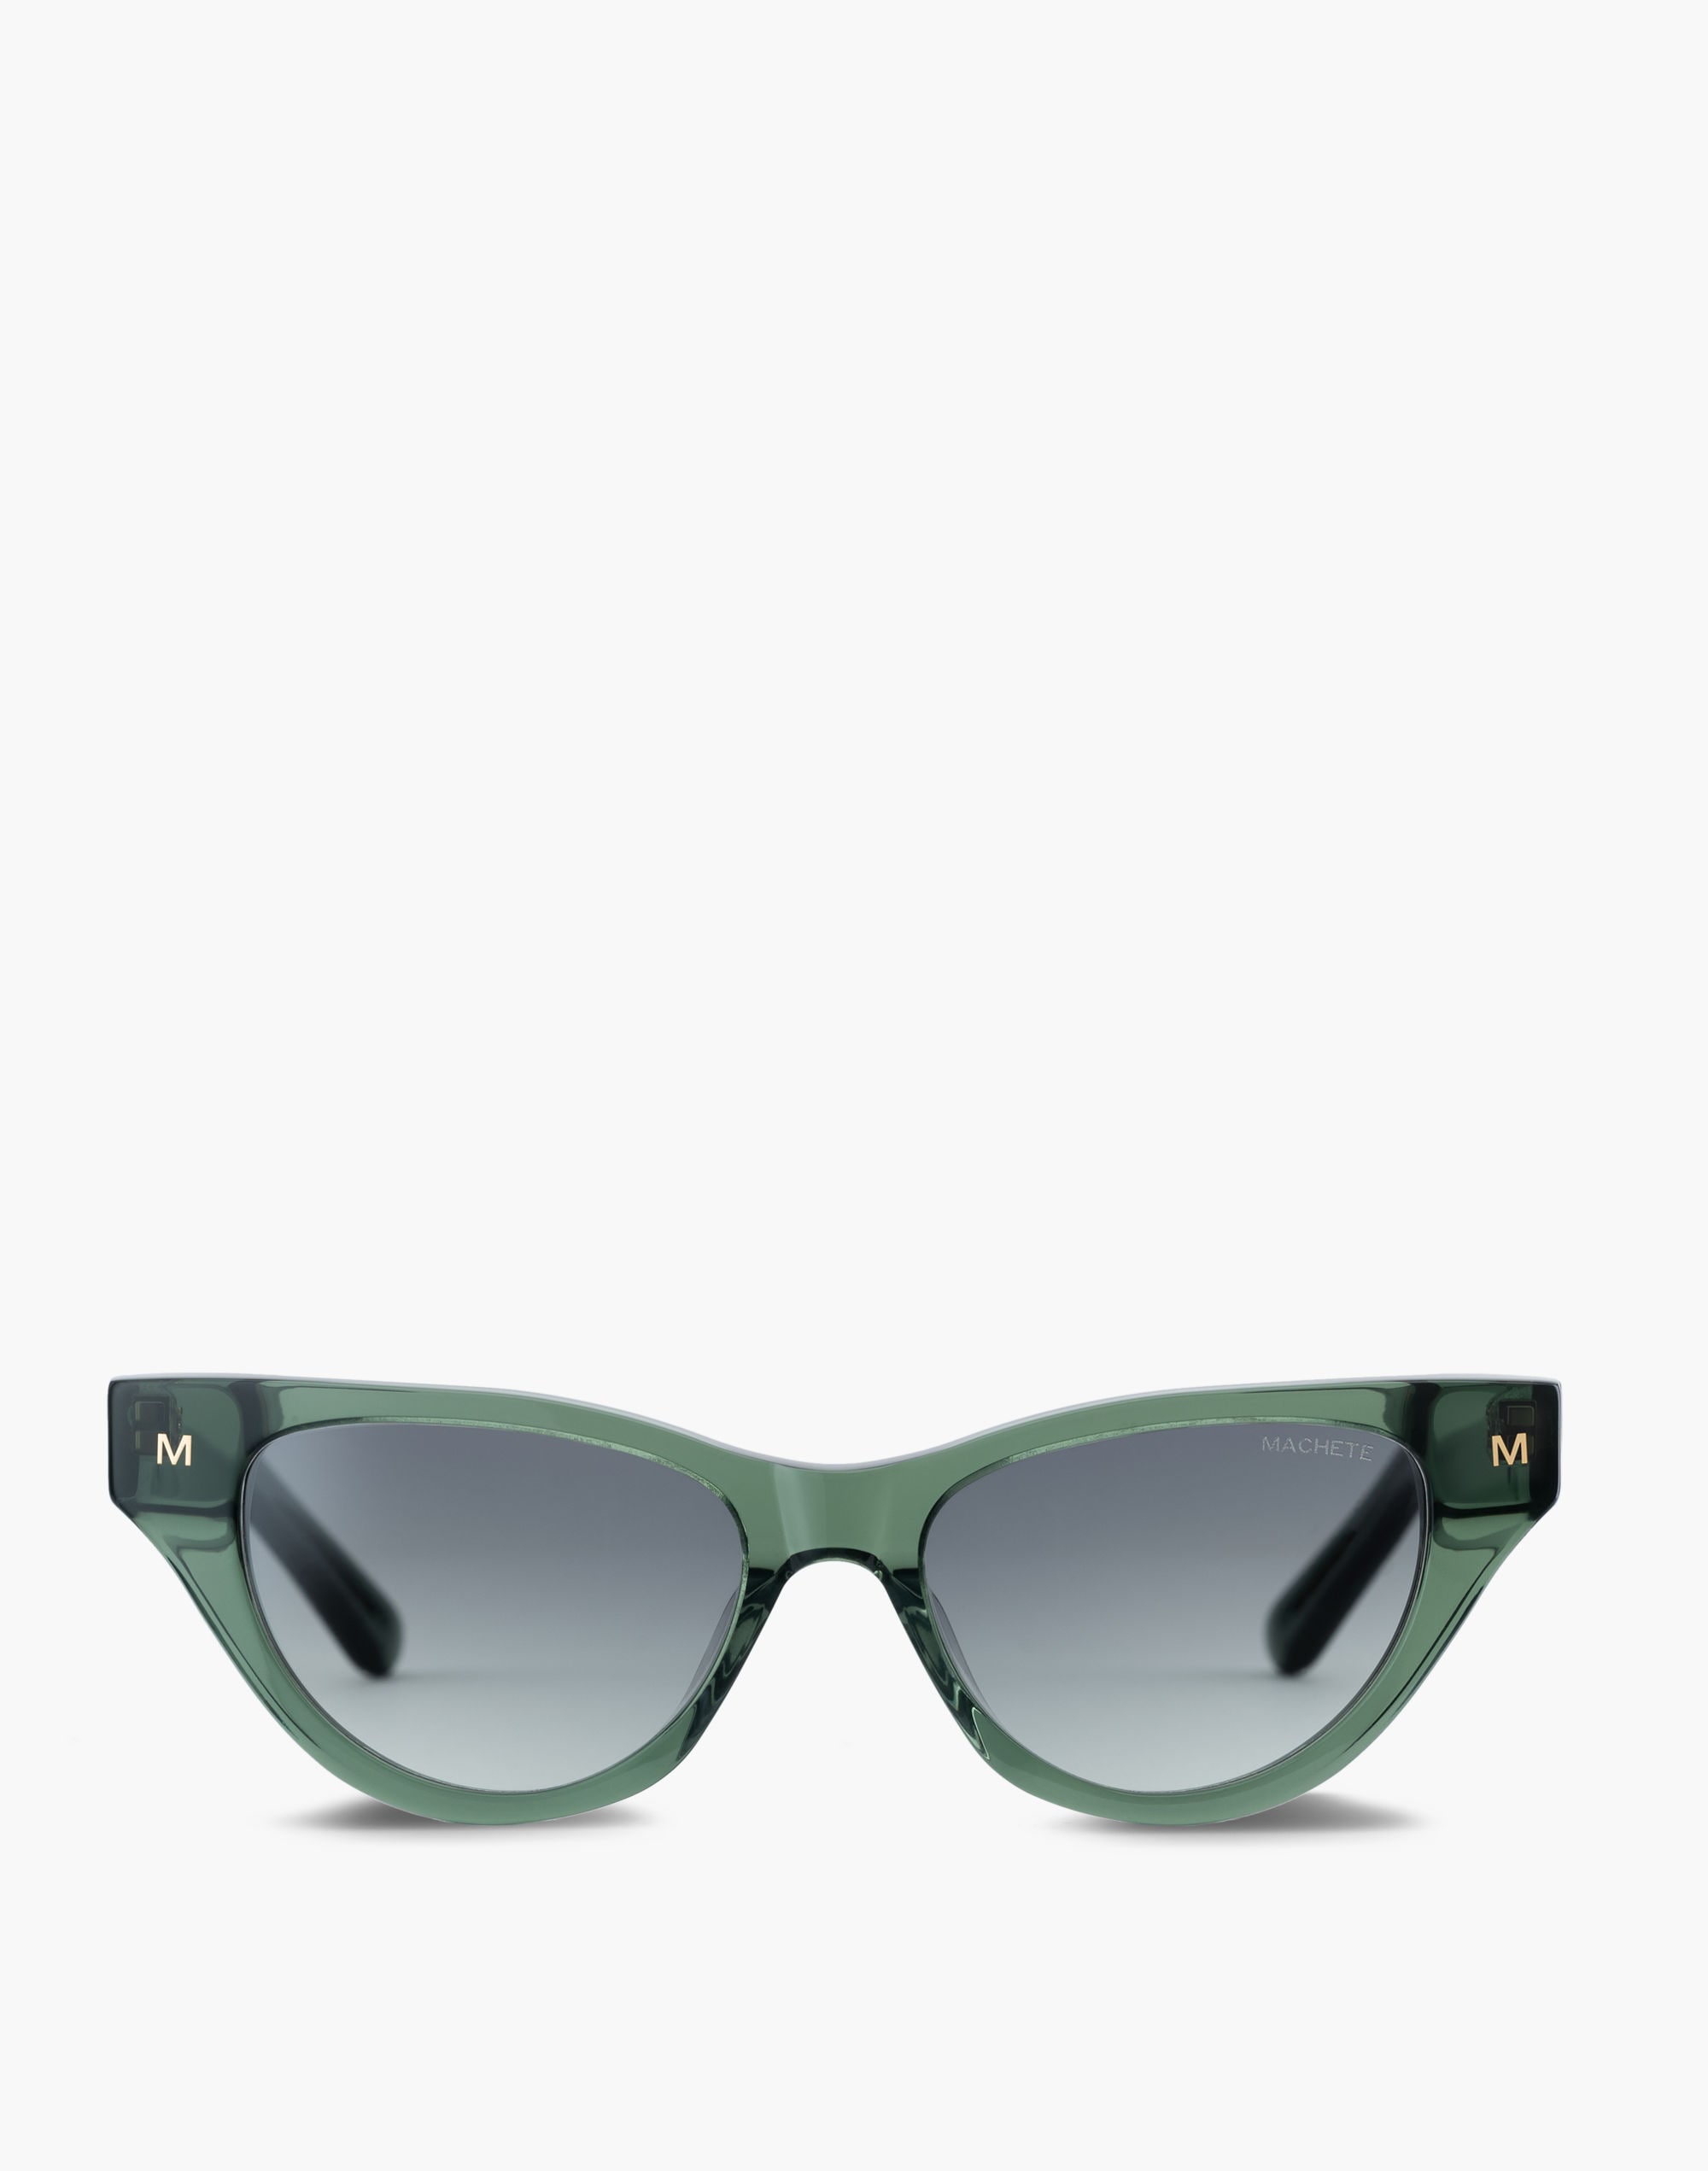 Mw Machete Suzy Sunglasses In Green